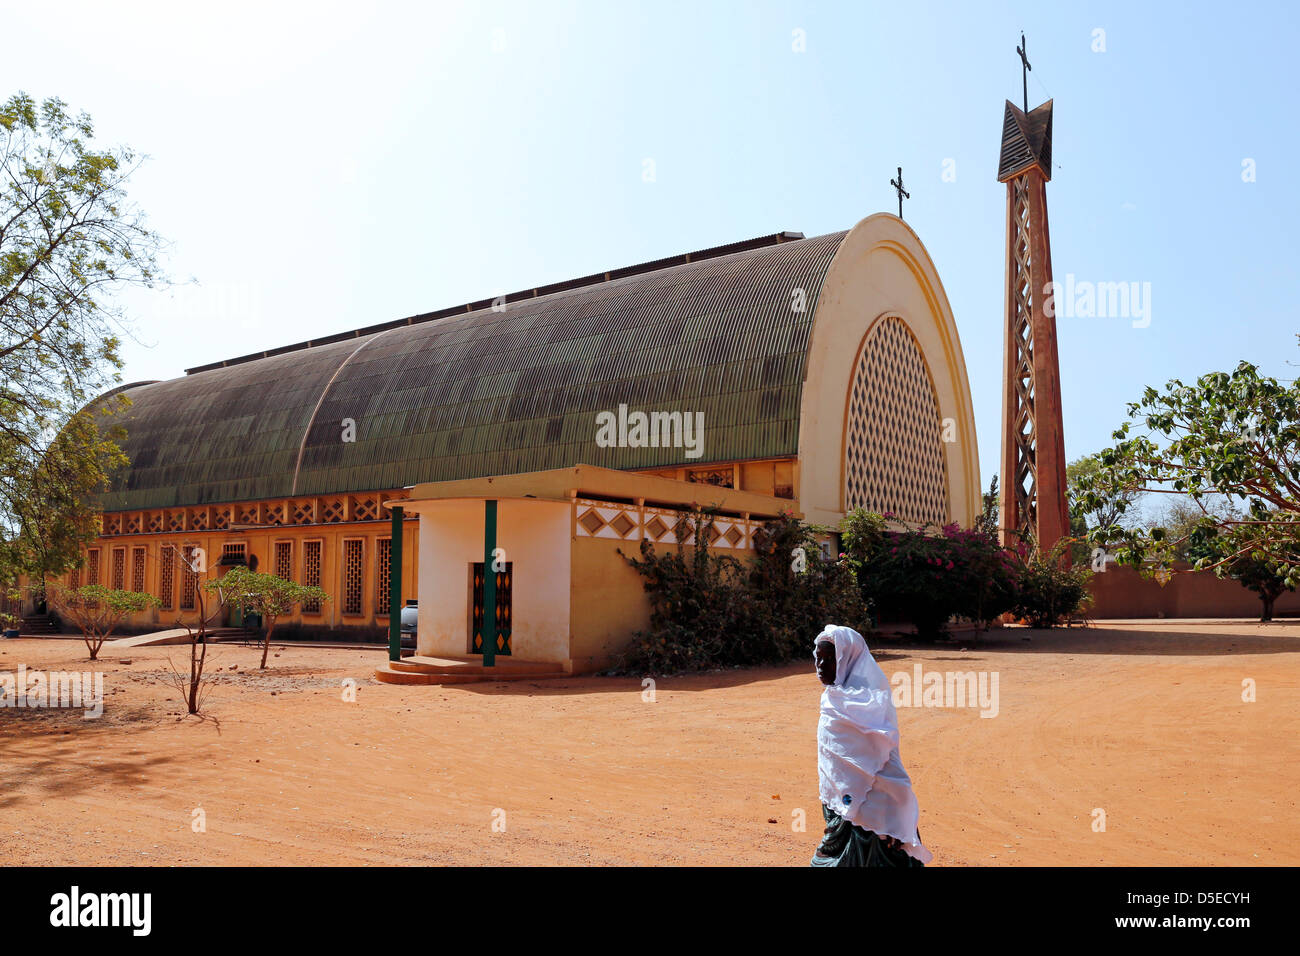 Cathédrale Catholique romaine dans Bobo-Dioulasse, Burkina Faso, Afrique Banque D'Images